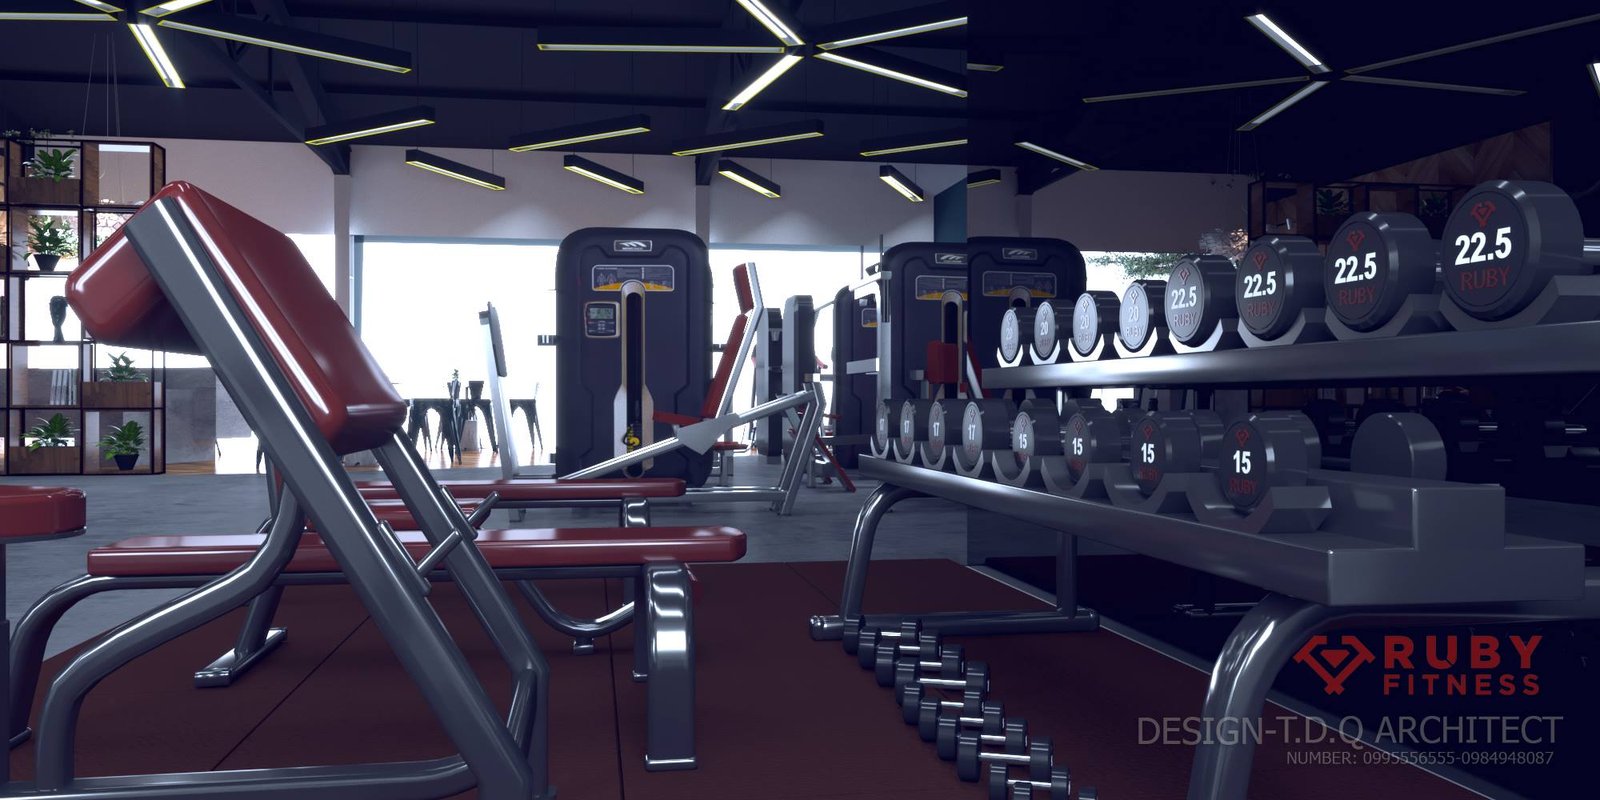 Thiết kế bản ảnh 3D mô phỏng cho phòng tập gym